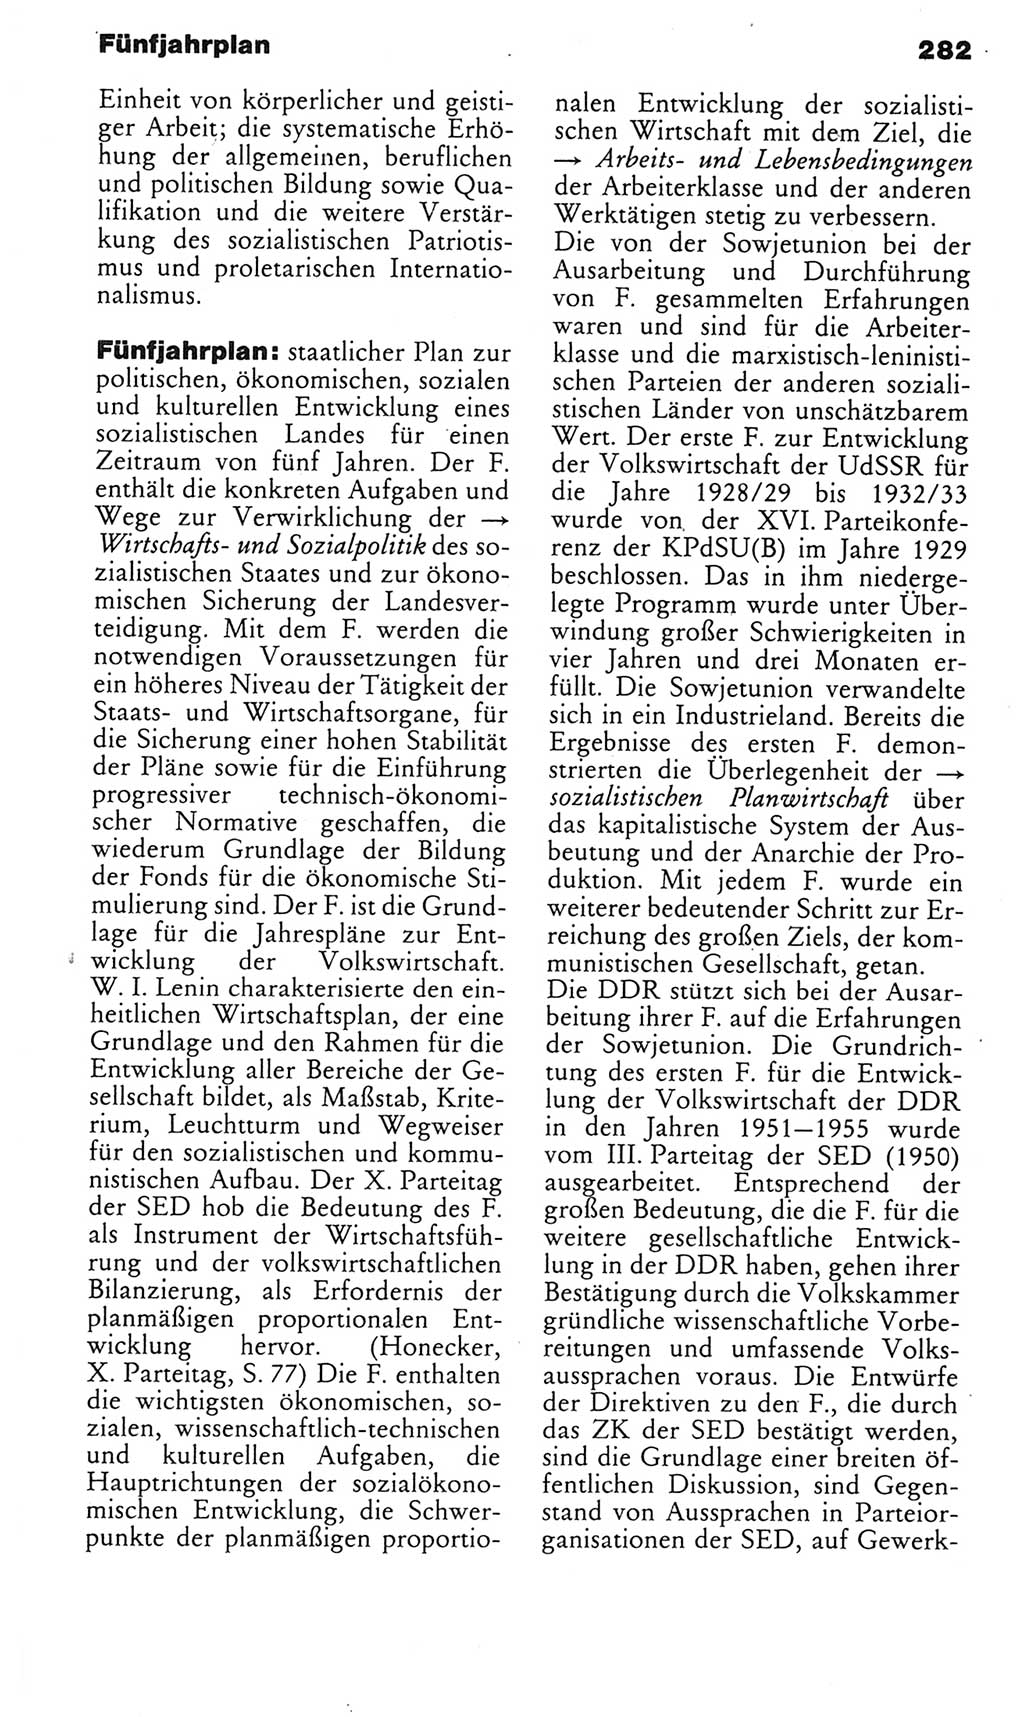 Kleines politisches Wörterbuch [Deutsche Demokratische Republik (DDR)] 1985, Seite 282 (Kl. pol. Wb. DDR 1985, S. 282)